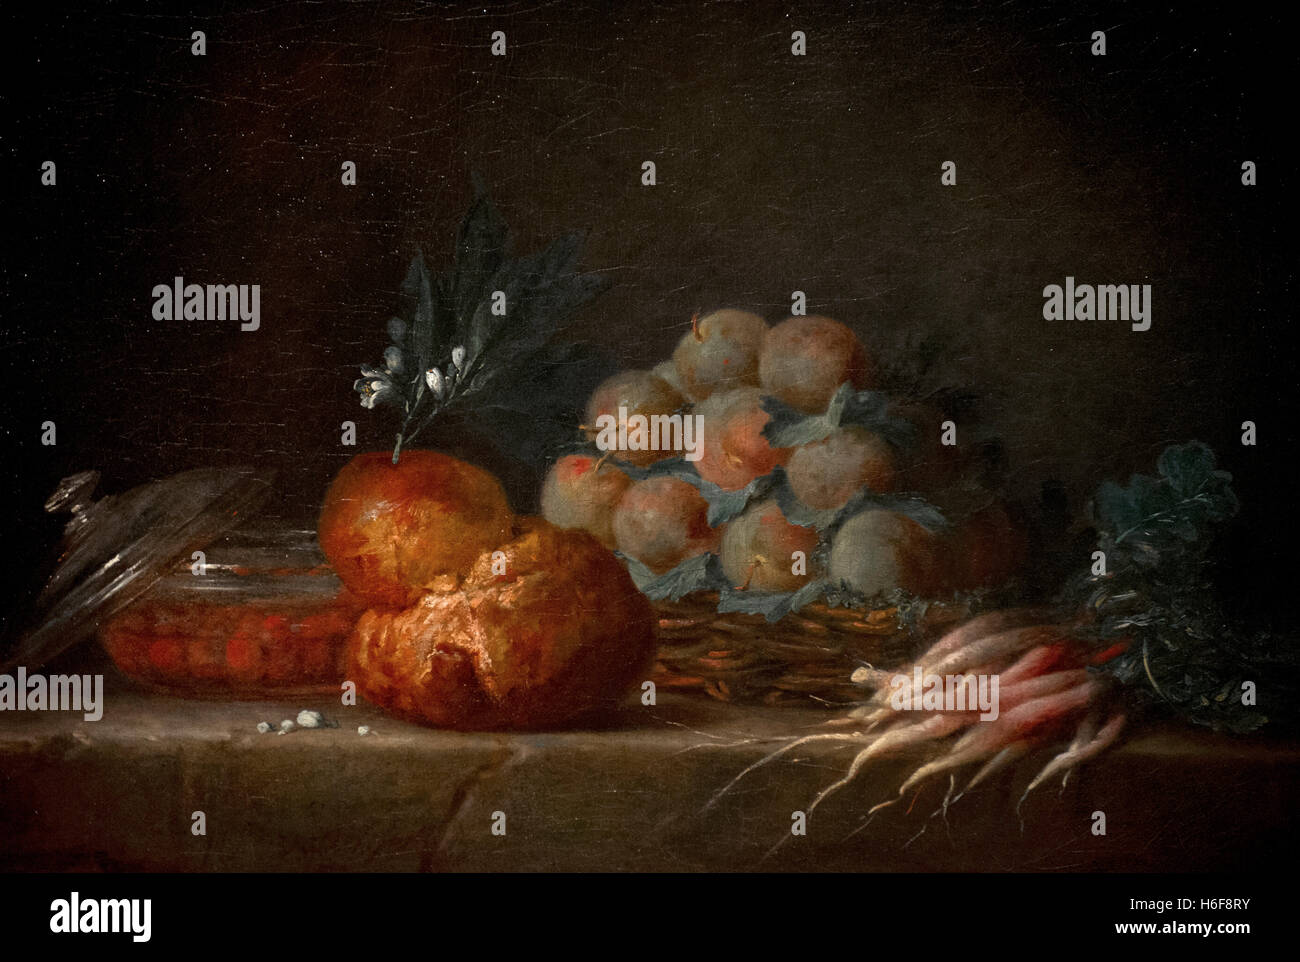 Henri Fantin-latour (1744-1818). Le peintre français. Nature morte à la brioche, fruits et légumes, 1775. Musée national. Stockholm. La Suède. Banque D'Images